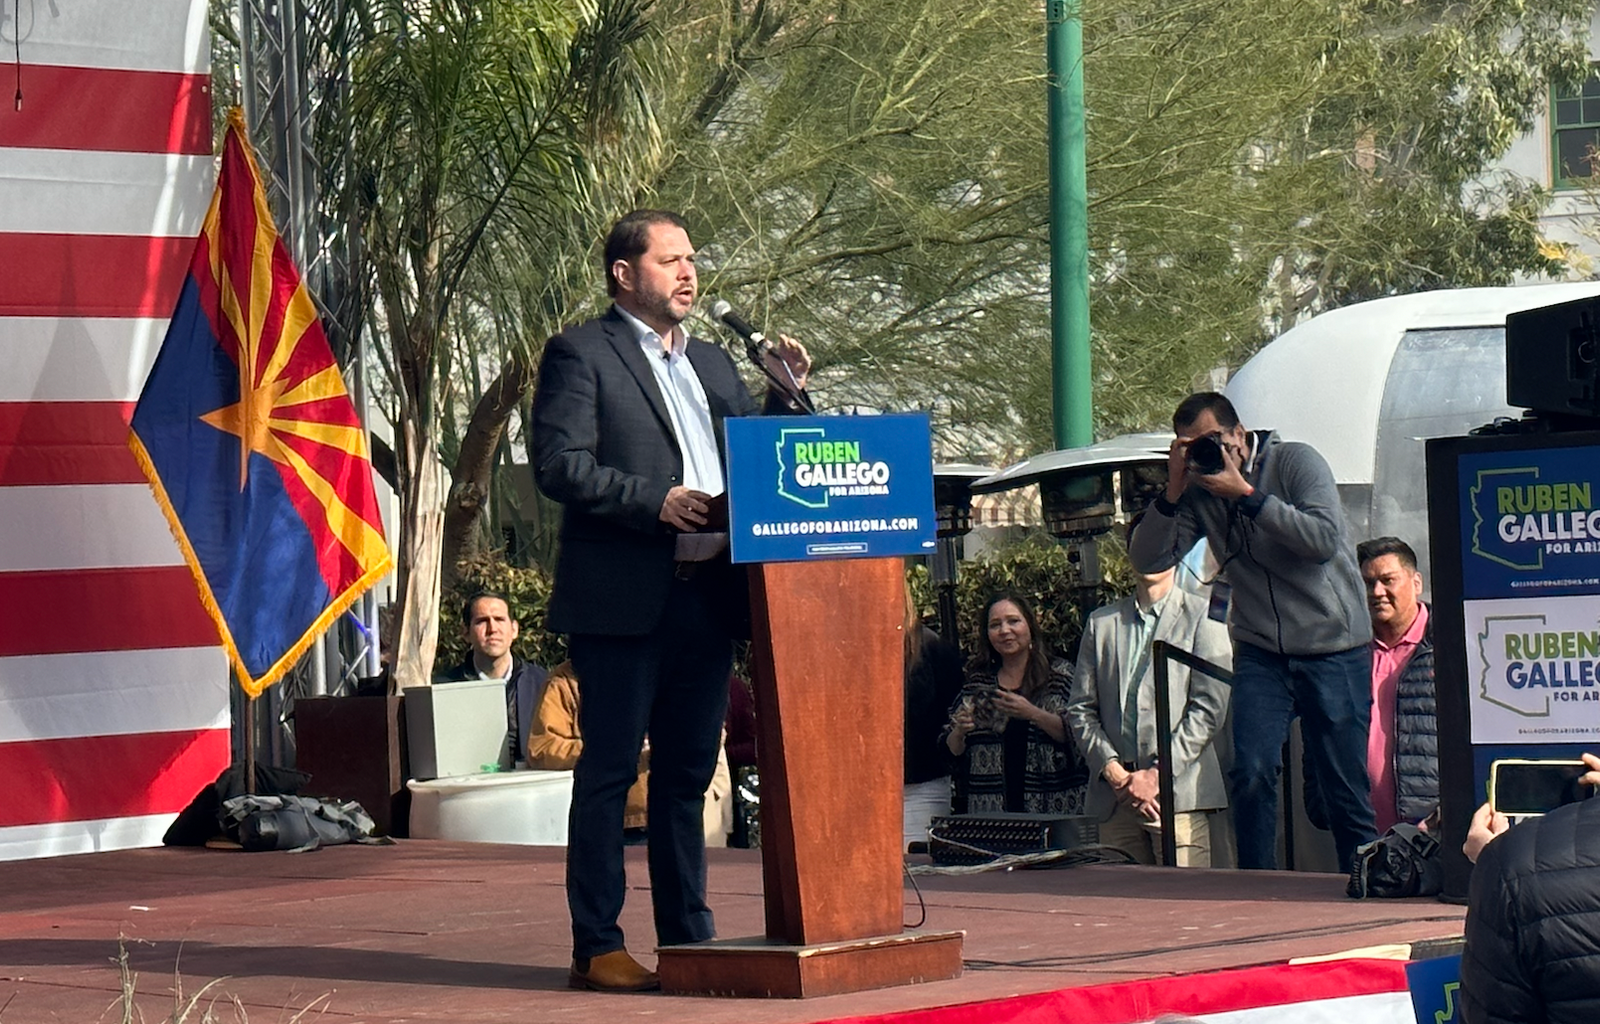 Ruben Gallego in Tucson.